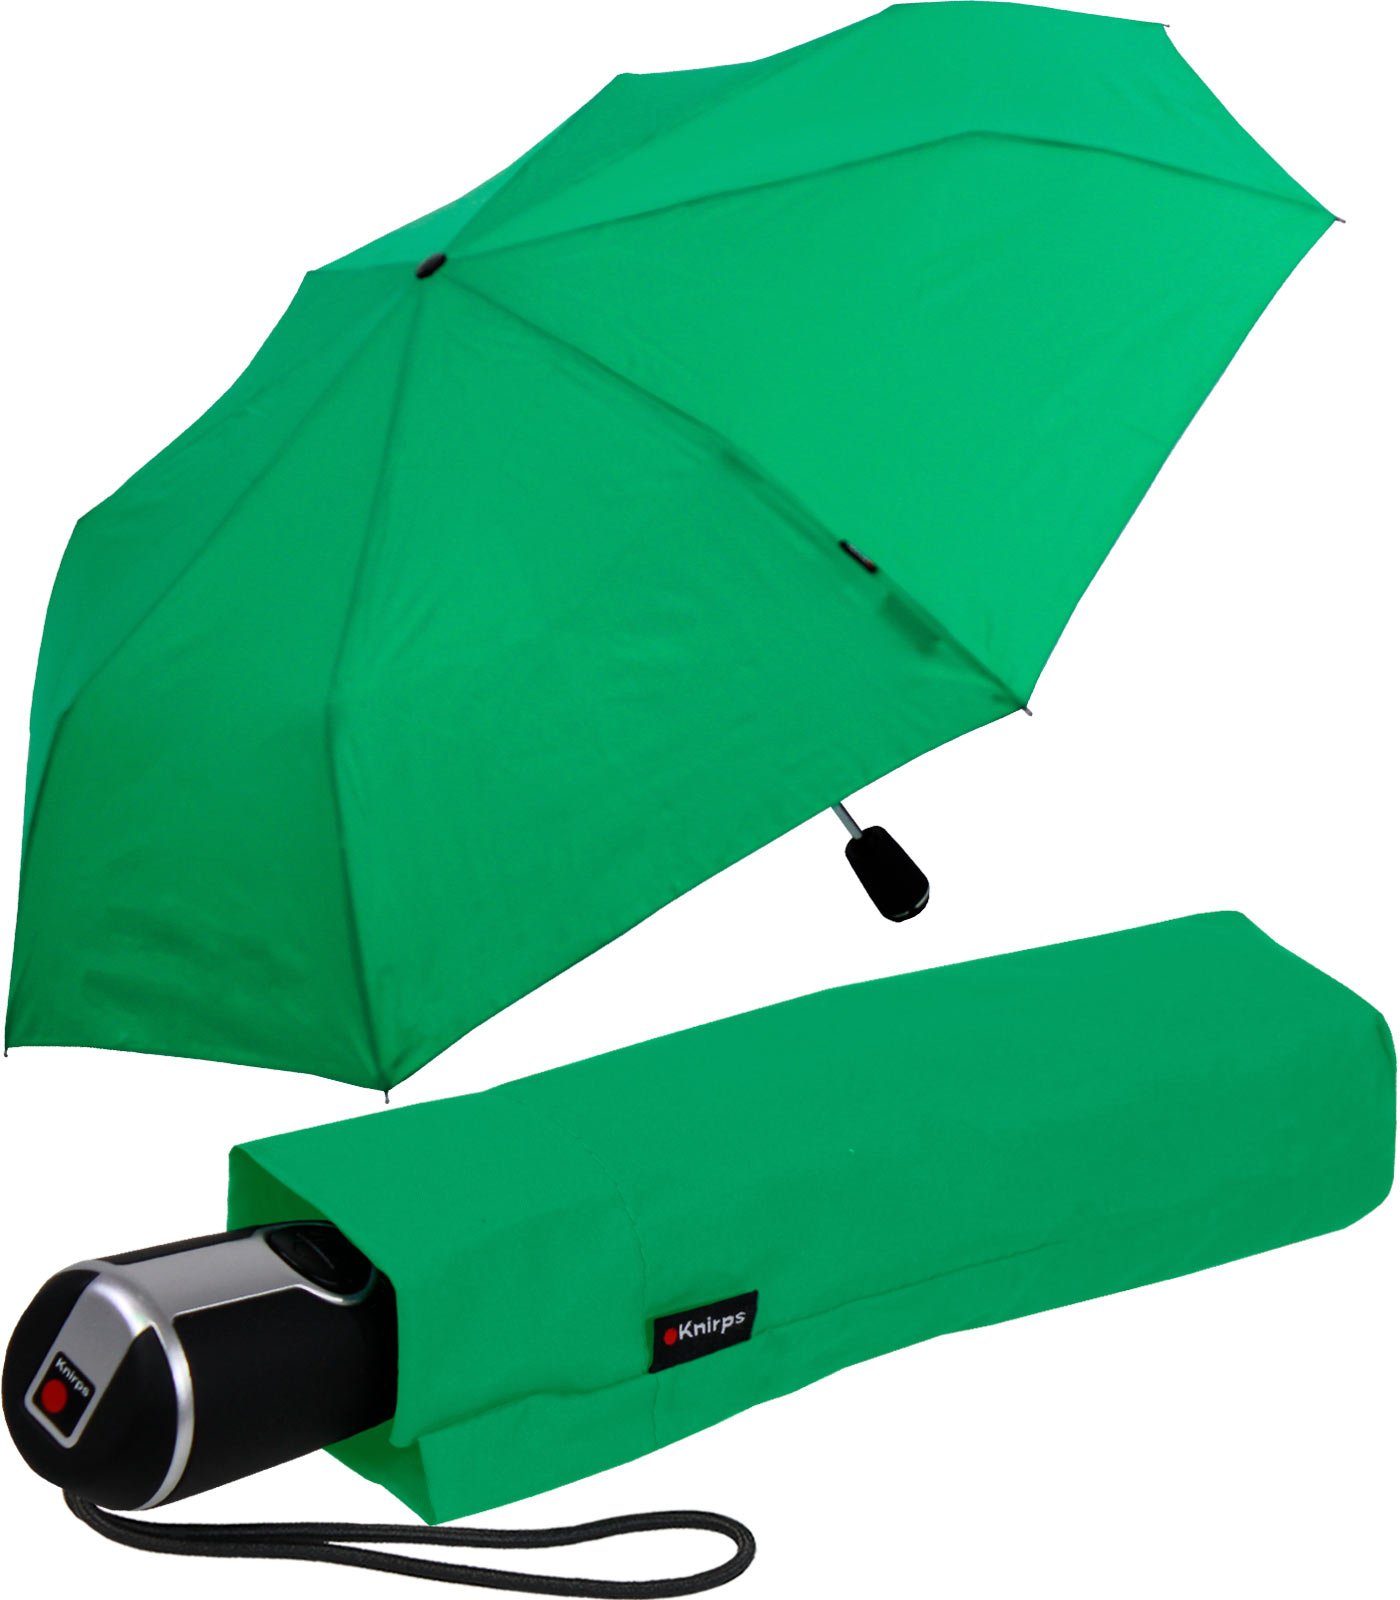 Knirps Taschenschirm in Grün Damen Accessoires Regenschirme 